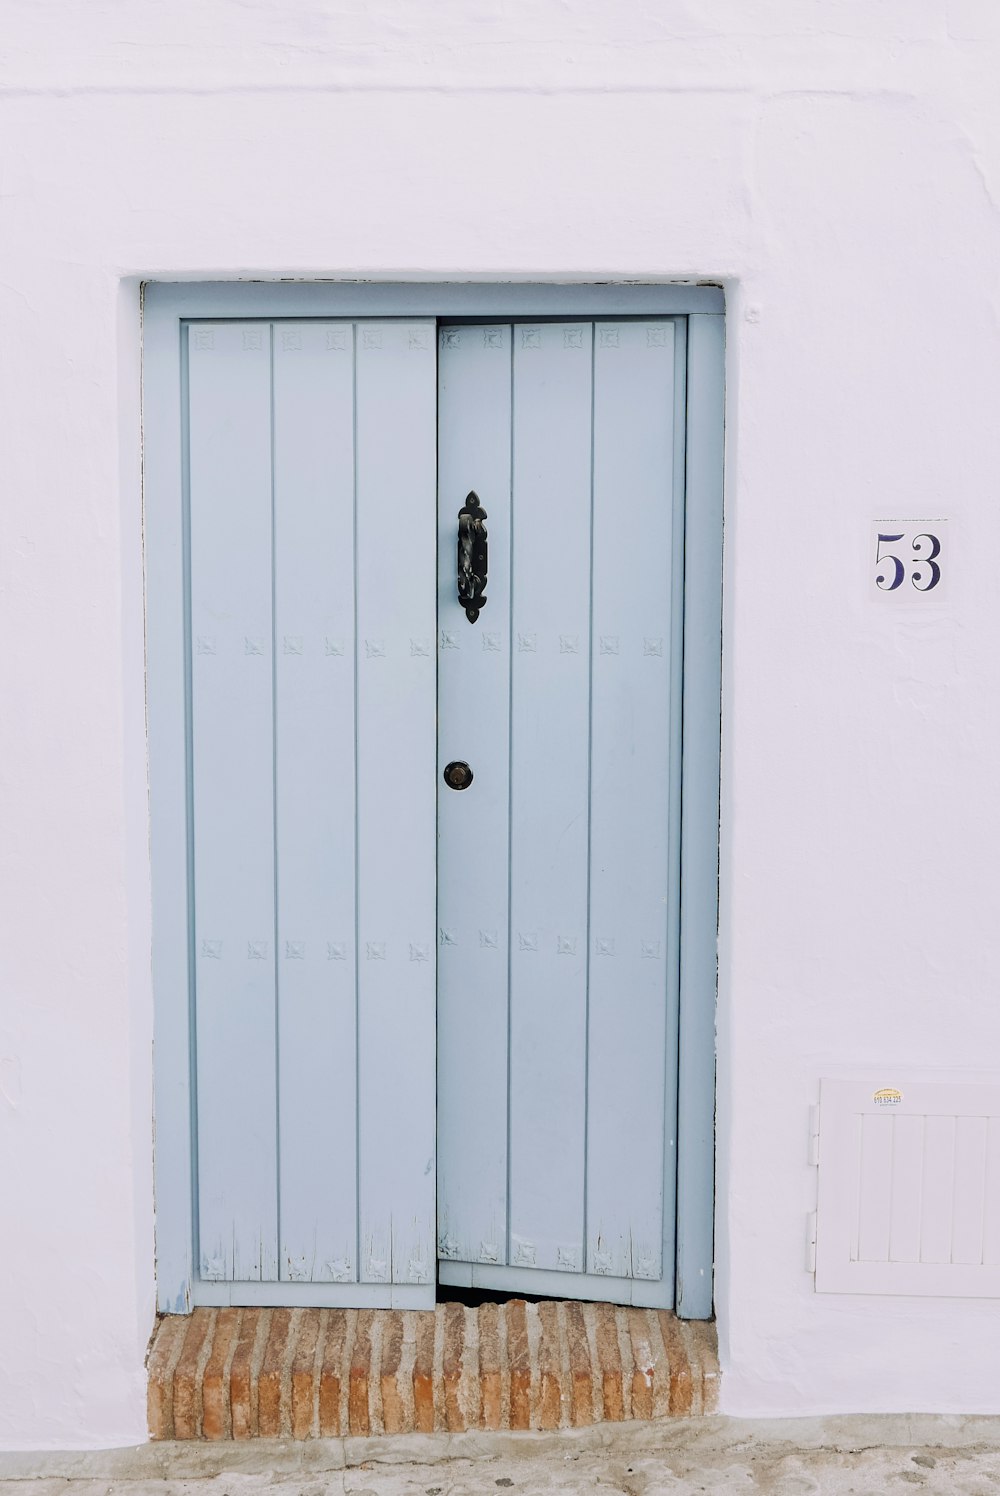 shallow focus photo of gray wooden door